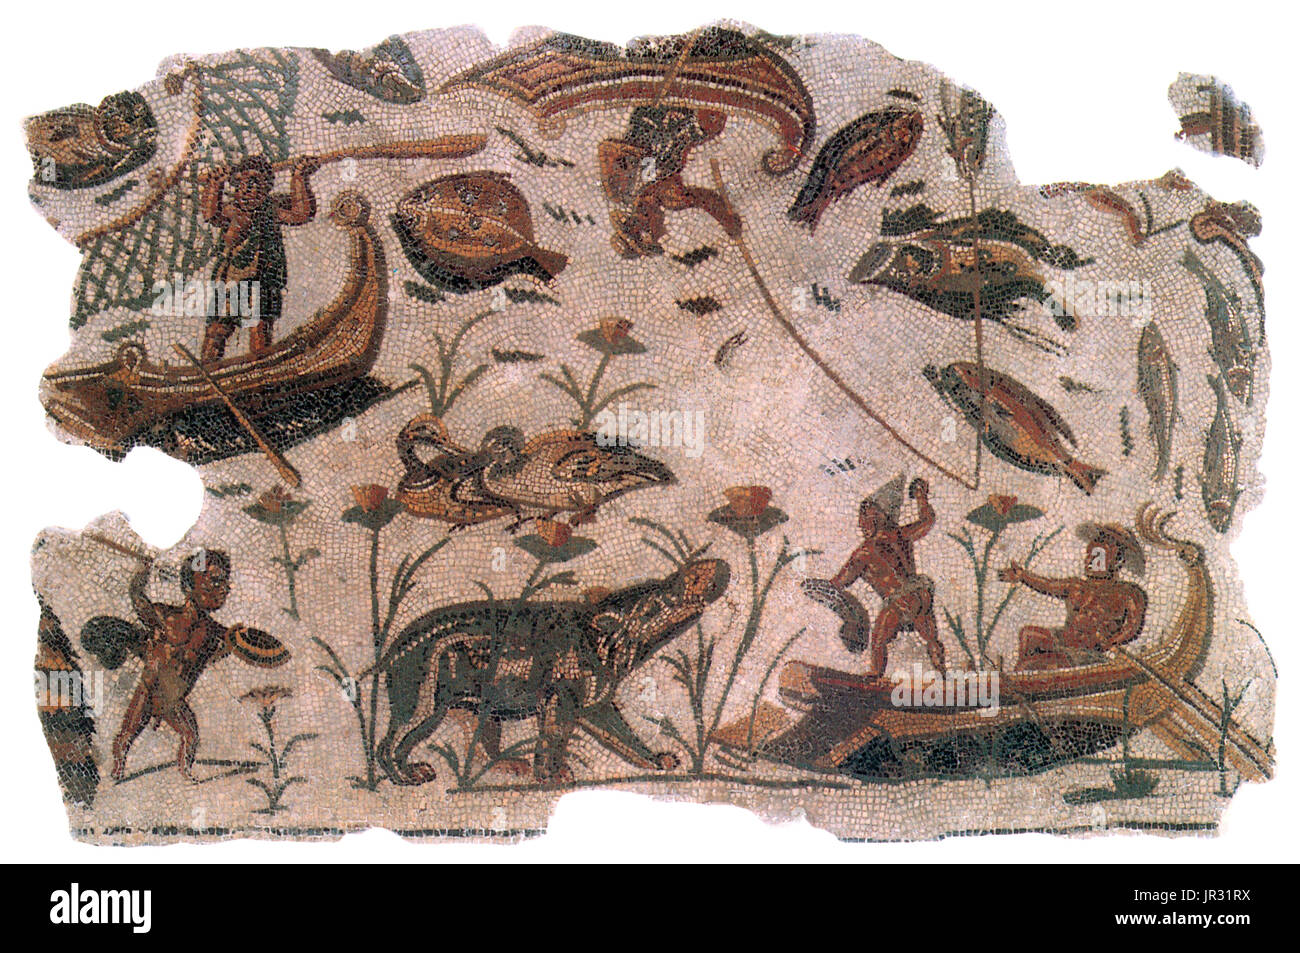 Nilotica mosaico raffigurante i pigmei caccia un ippopotamo. Civiltà Romana, 3° secolo. I mosaici romani sono costruiti da blocchi geometrici chiamati tessere, messi insieme per creare le forme delle figure, motivi e modelli. Materiali per tessere sono state ottenute da fonti locali della pietra naturale con le aggiunte di taglio, mattoni e piastrelle in ceramica creando sfumature colorate di, prevalentemente, blu, nero, rosso, bianco e giallo. Modelli di policromi erano più comuni, ma monocromatico esempi sono noti. Foto Stock